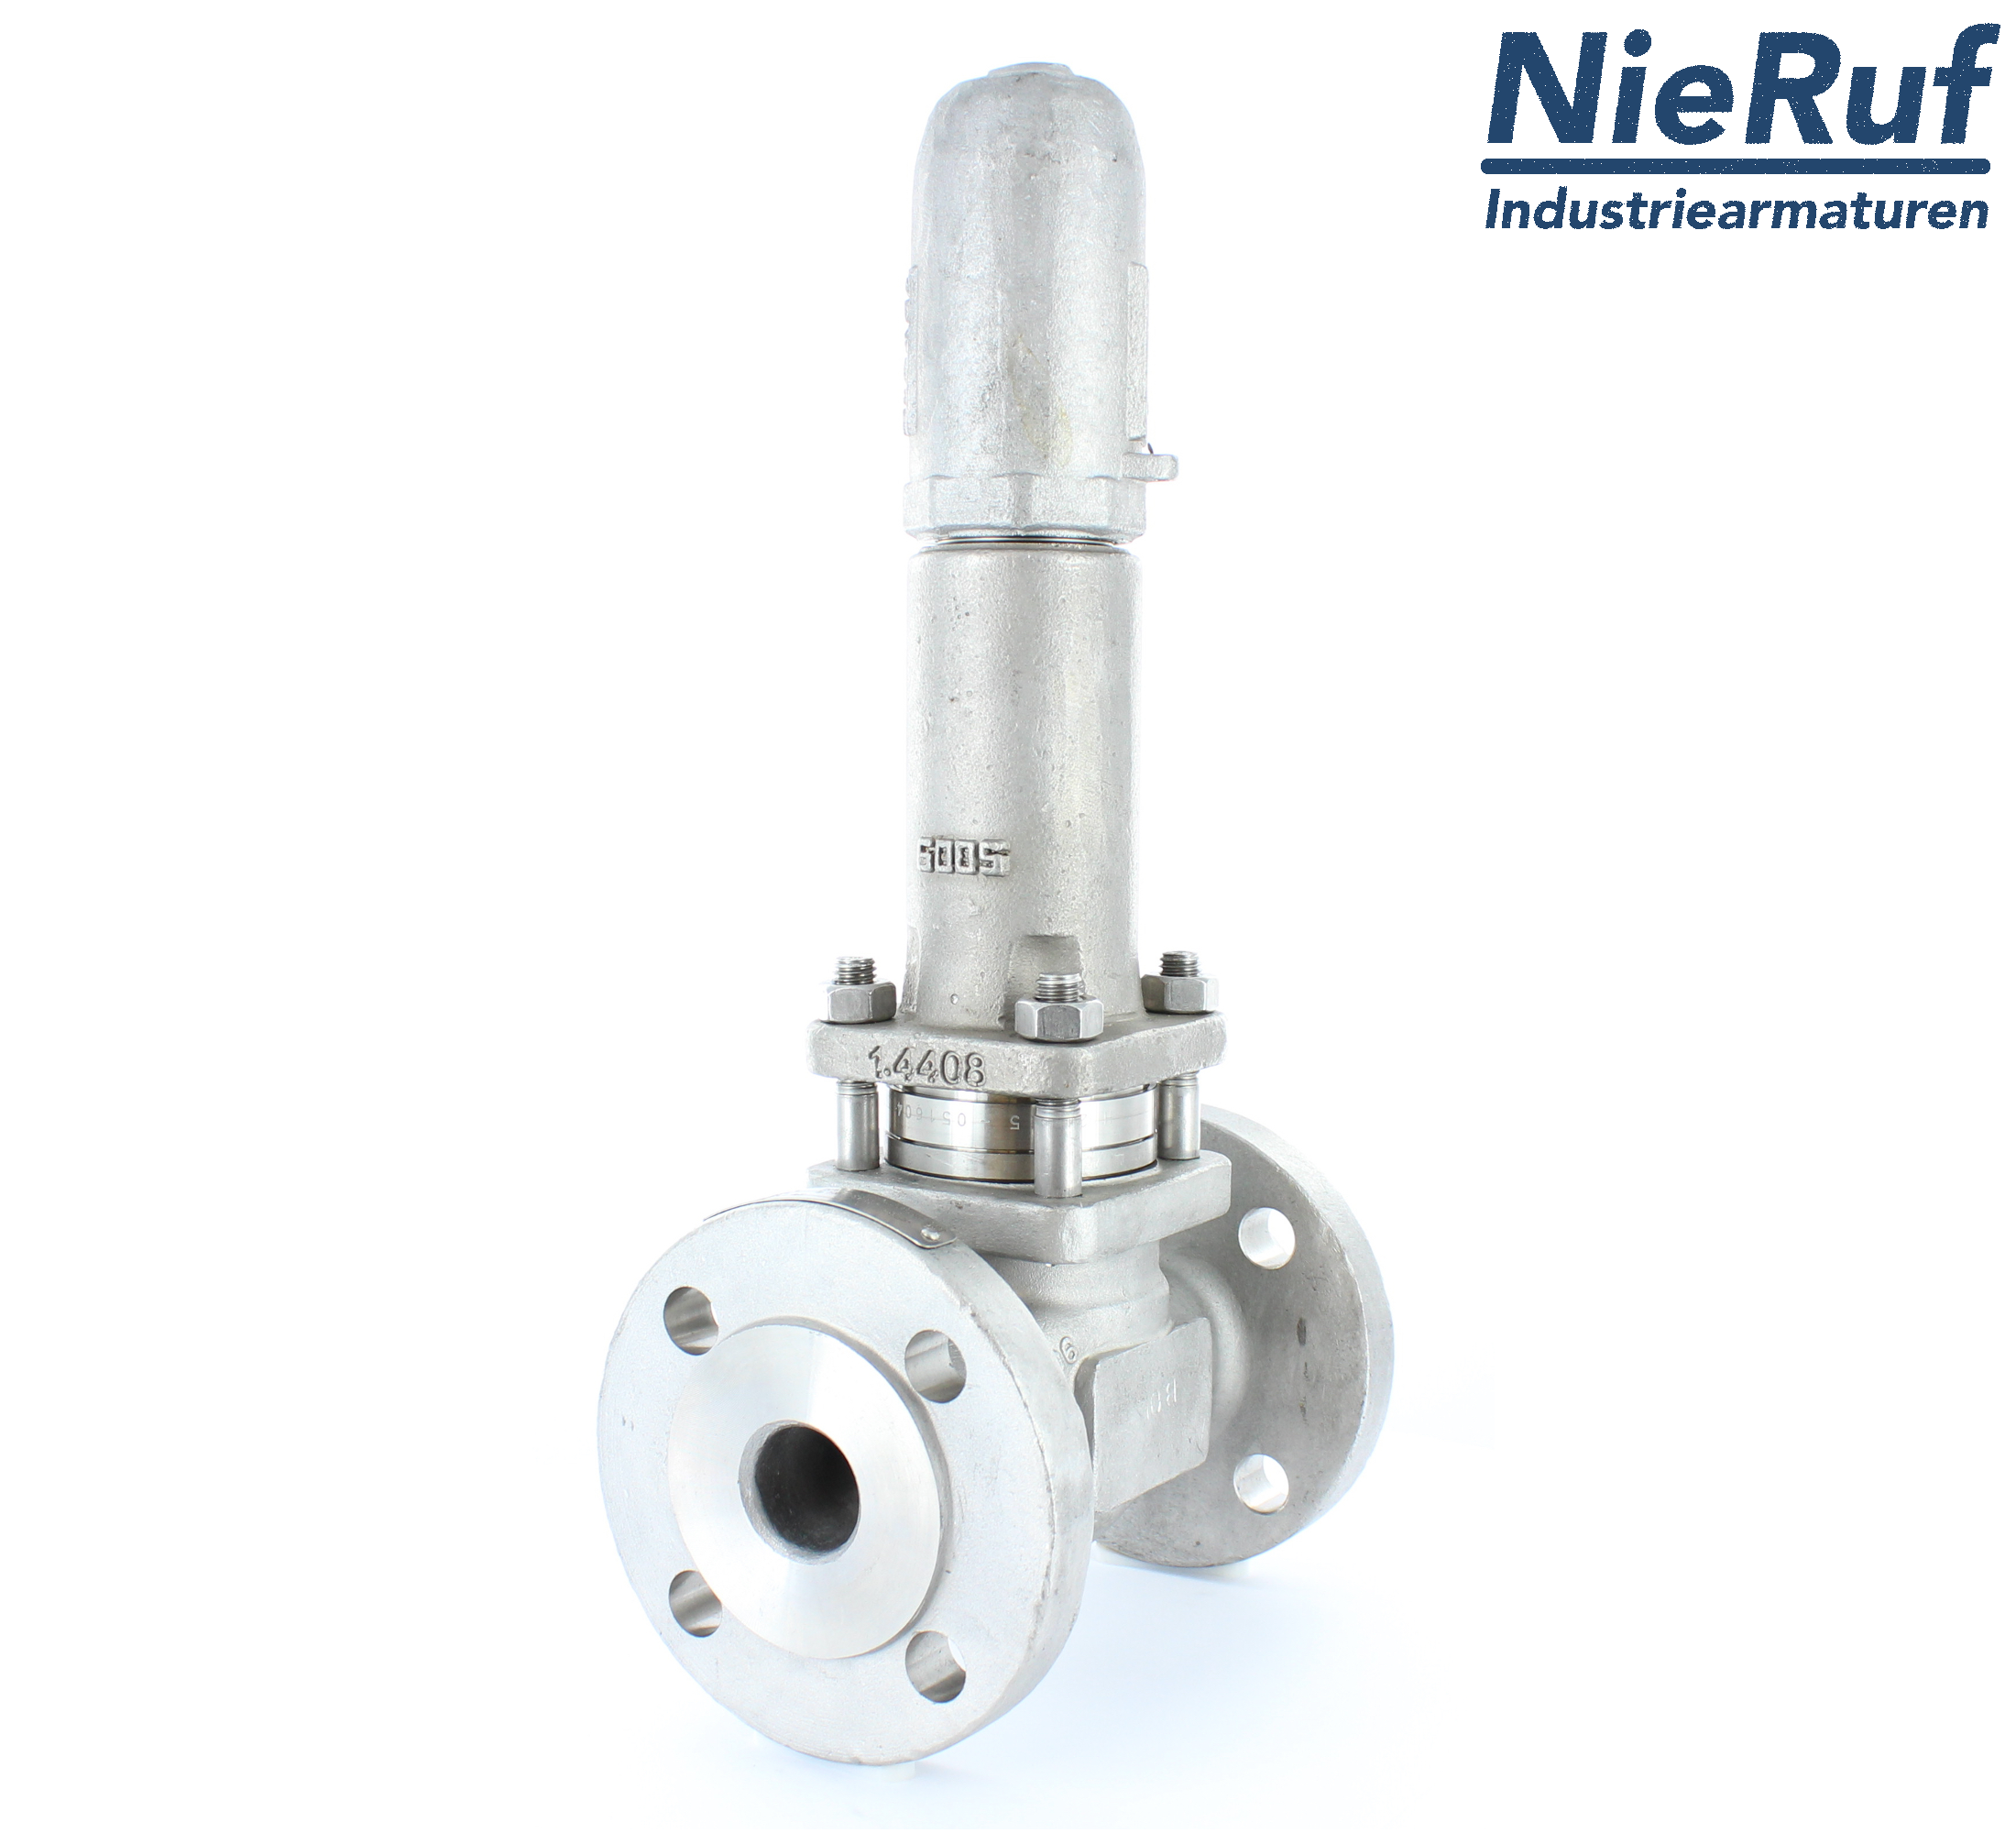 piston overflow valve DN 32 UV13 cast iron 1.0619+N 1,0 - 3,0 bar